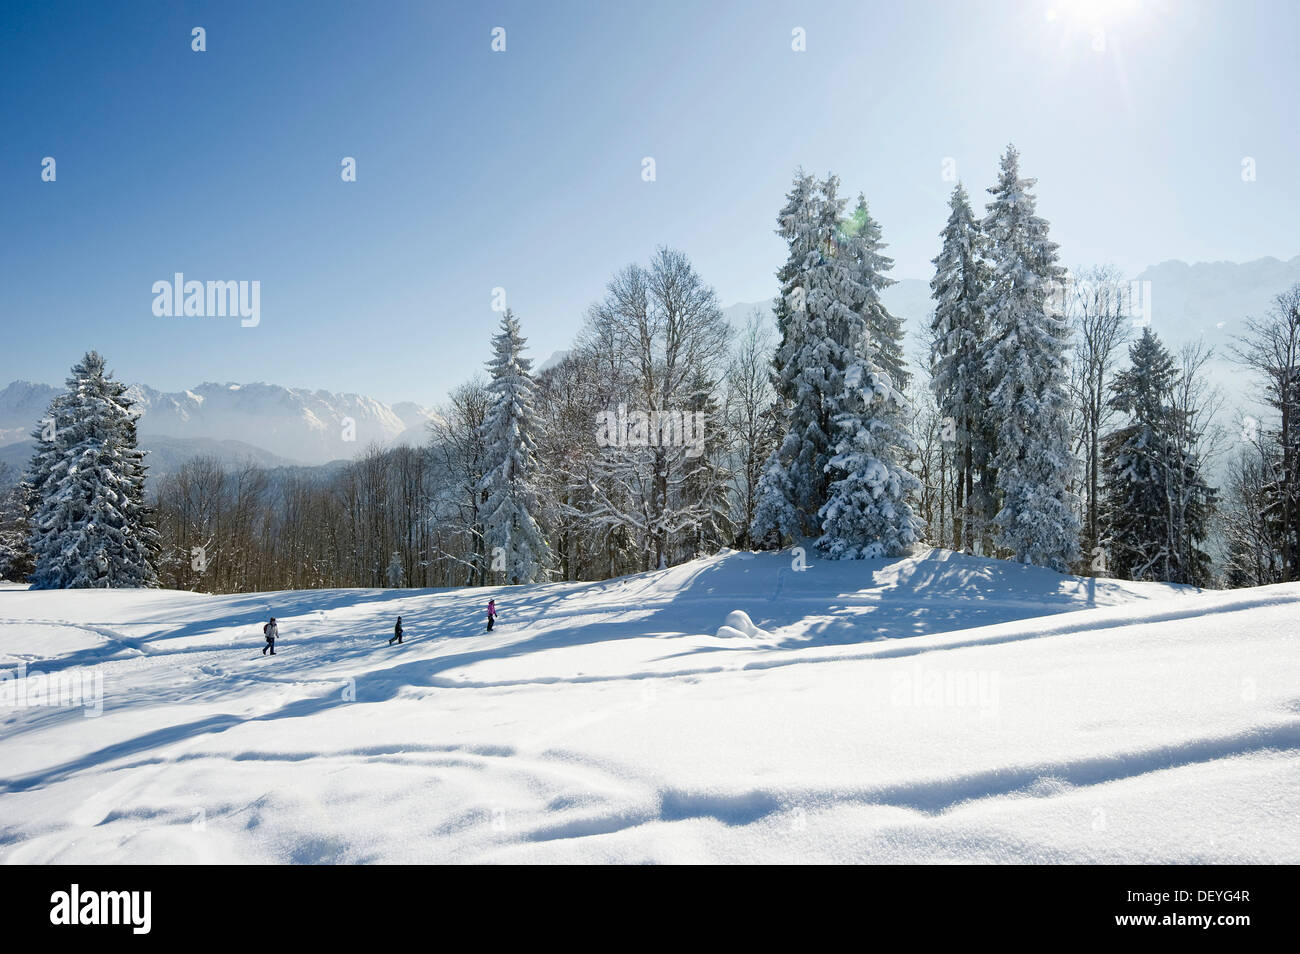 Snowy winter landscape, Eckbauer, Garmisch-Partenkirchen, Upper Bavaria, Bavaria, Germany Stock Photo